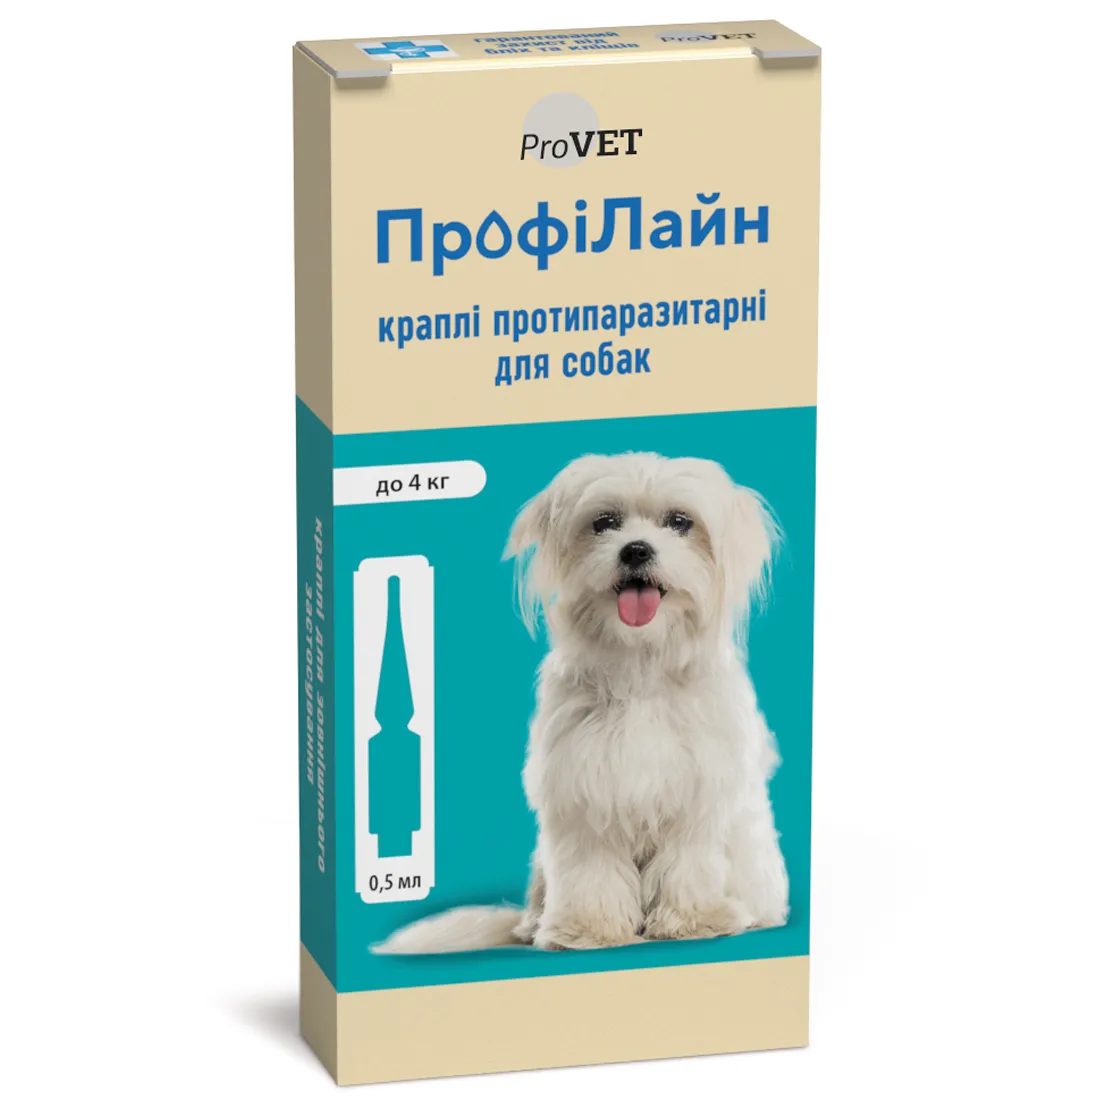 Капли на холку для собак ProVET ПрофиЛайн, от внешних паразитов, до 4 кг, 4 пипетки по 0,5 мл (PR240990) - фото 1